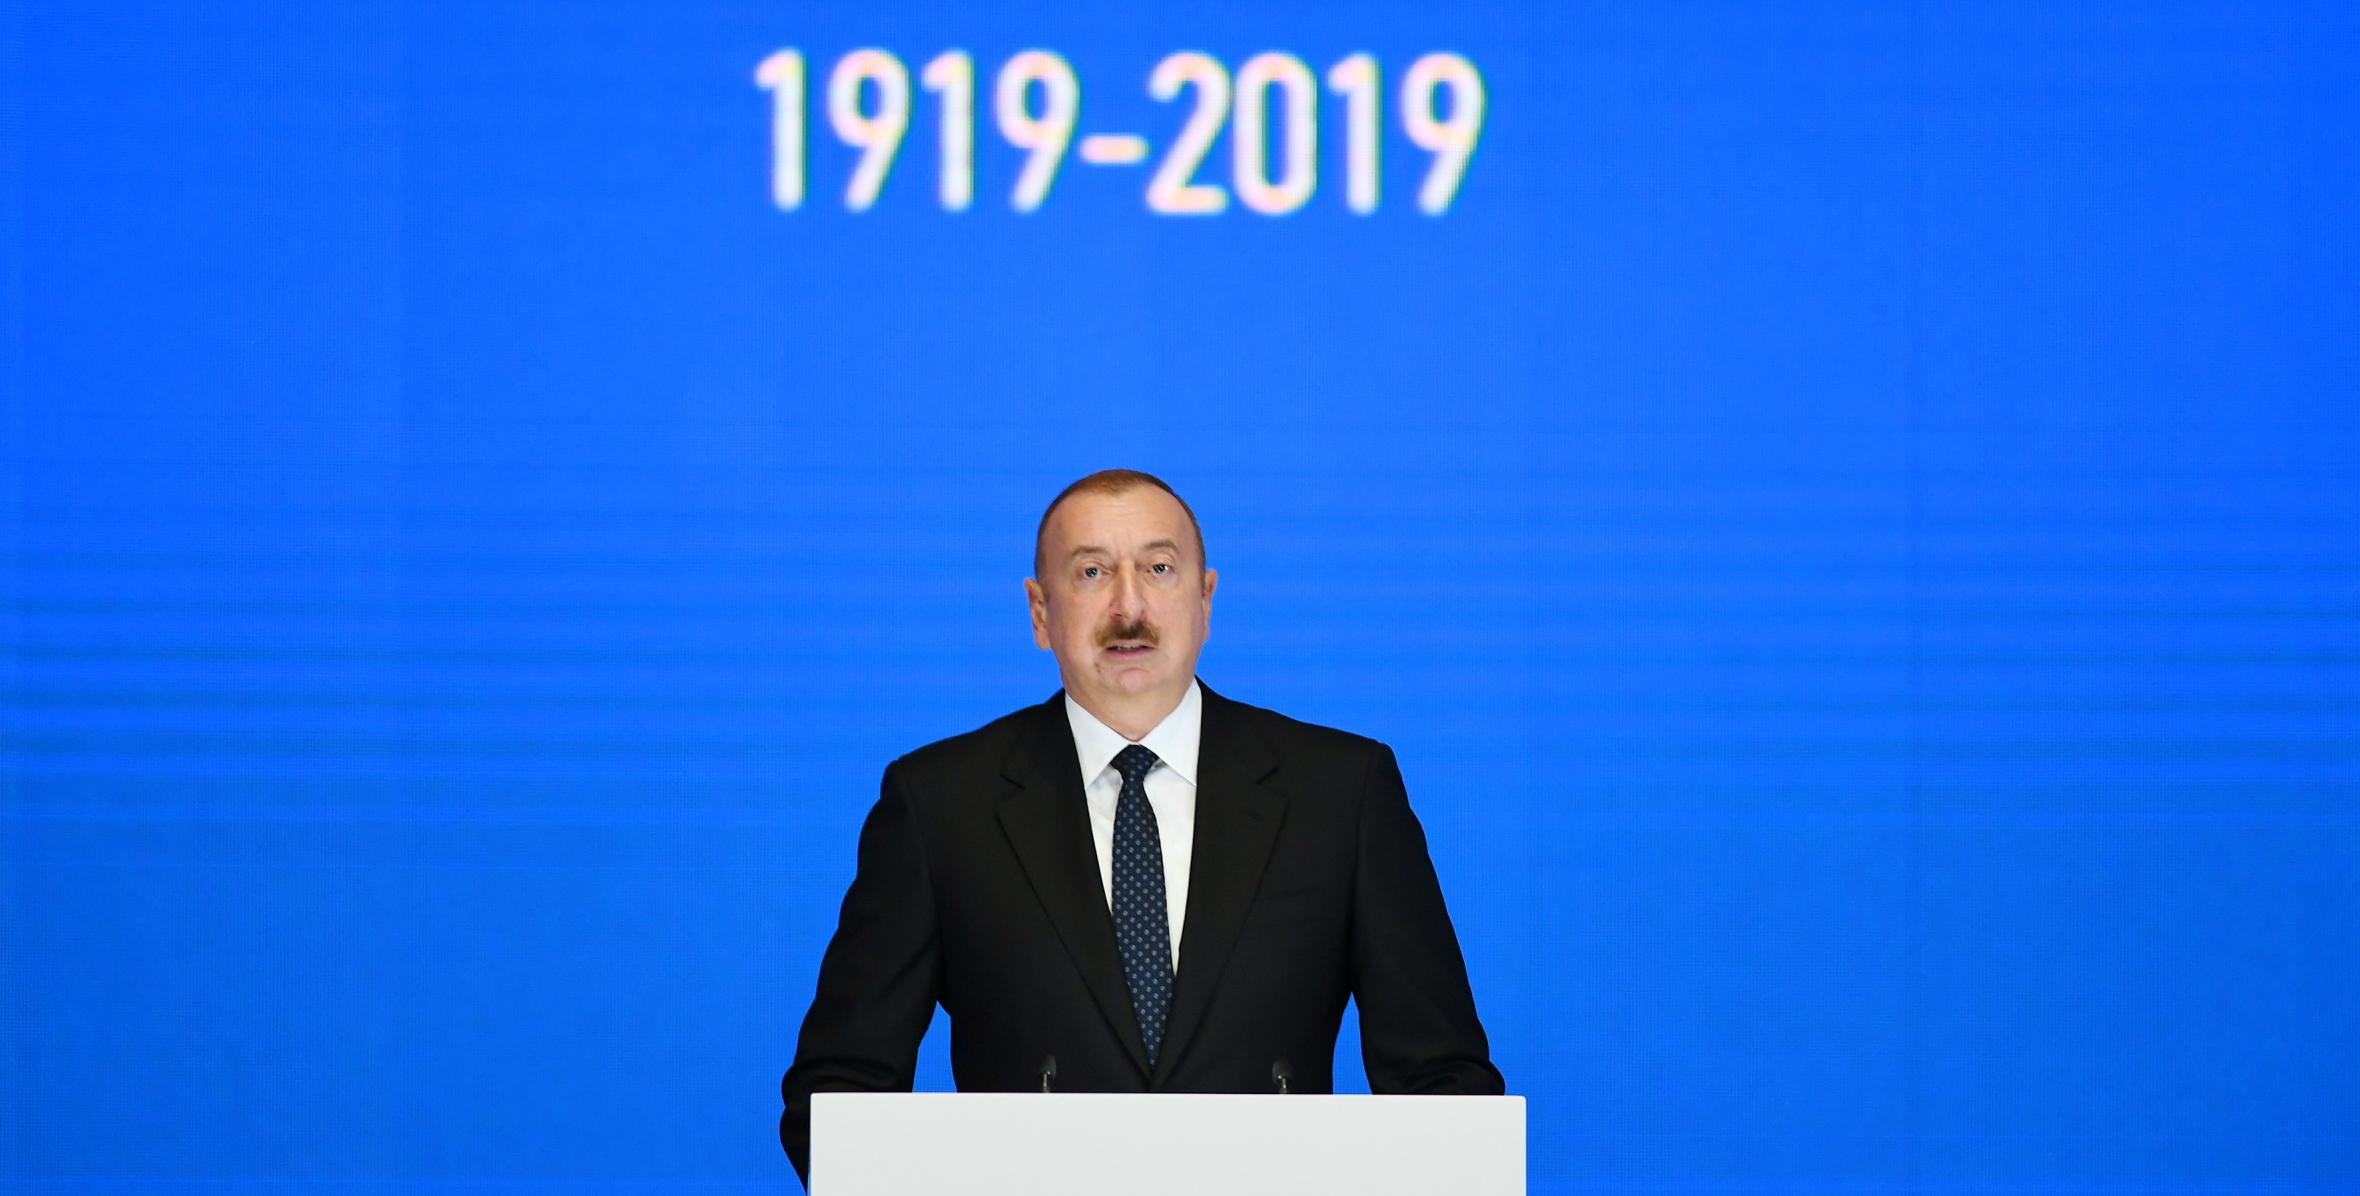 Ильхам Алиев принял участие в церемонии, проходившей по случаю 100-летнего юбилея Бакинского государственного университета